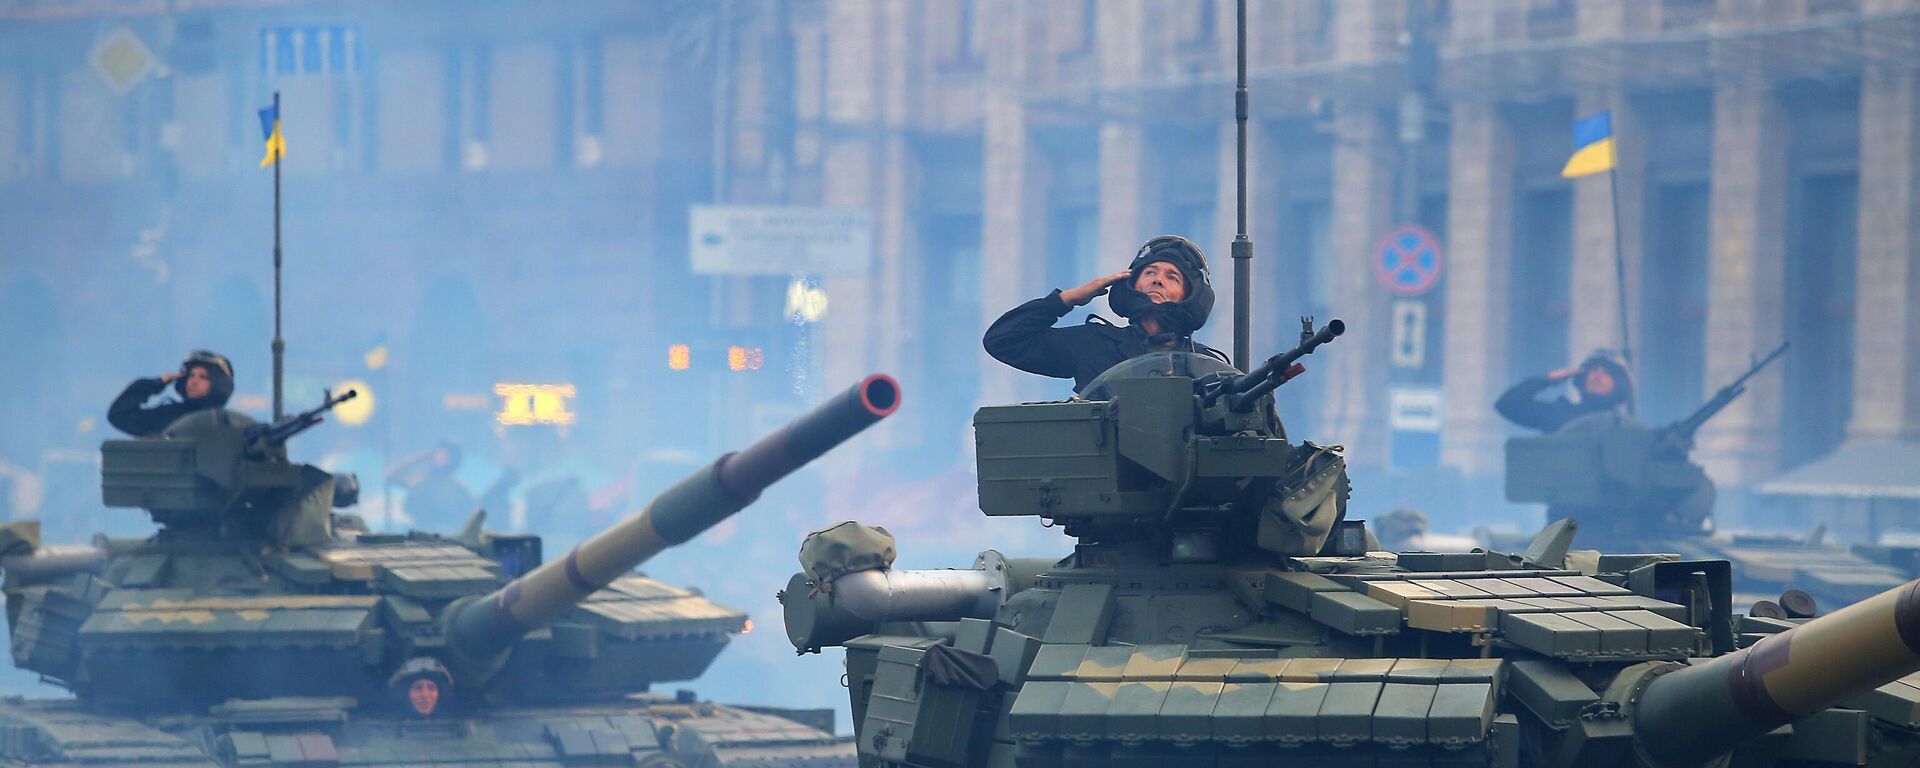 Танки Т-72 на репетиции военного парада ко Дню независимости Украины в Киеве, архивное фото - Sputnik Lietuva, 1920, 11.12.2021